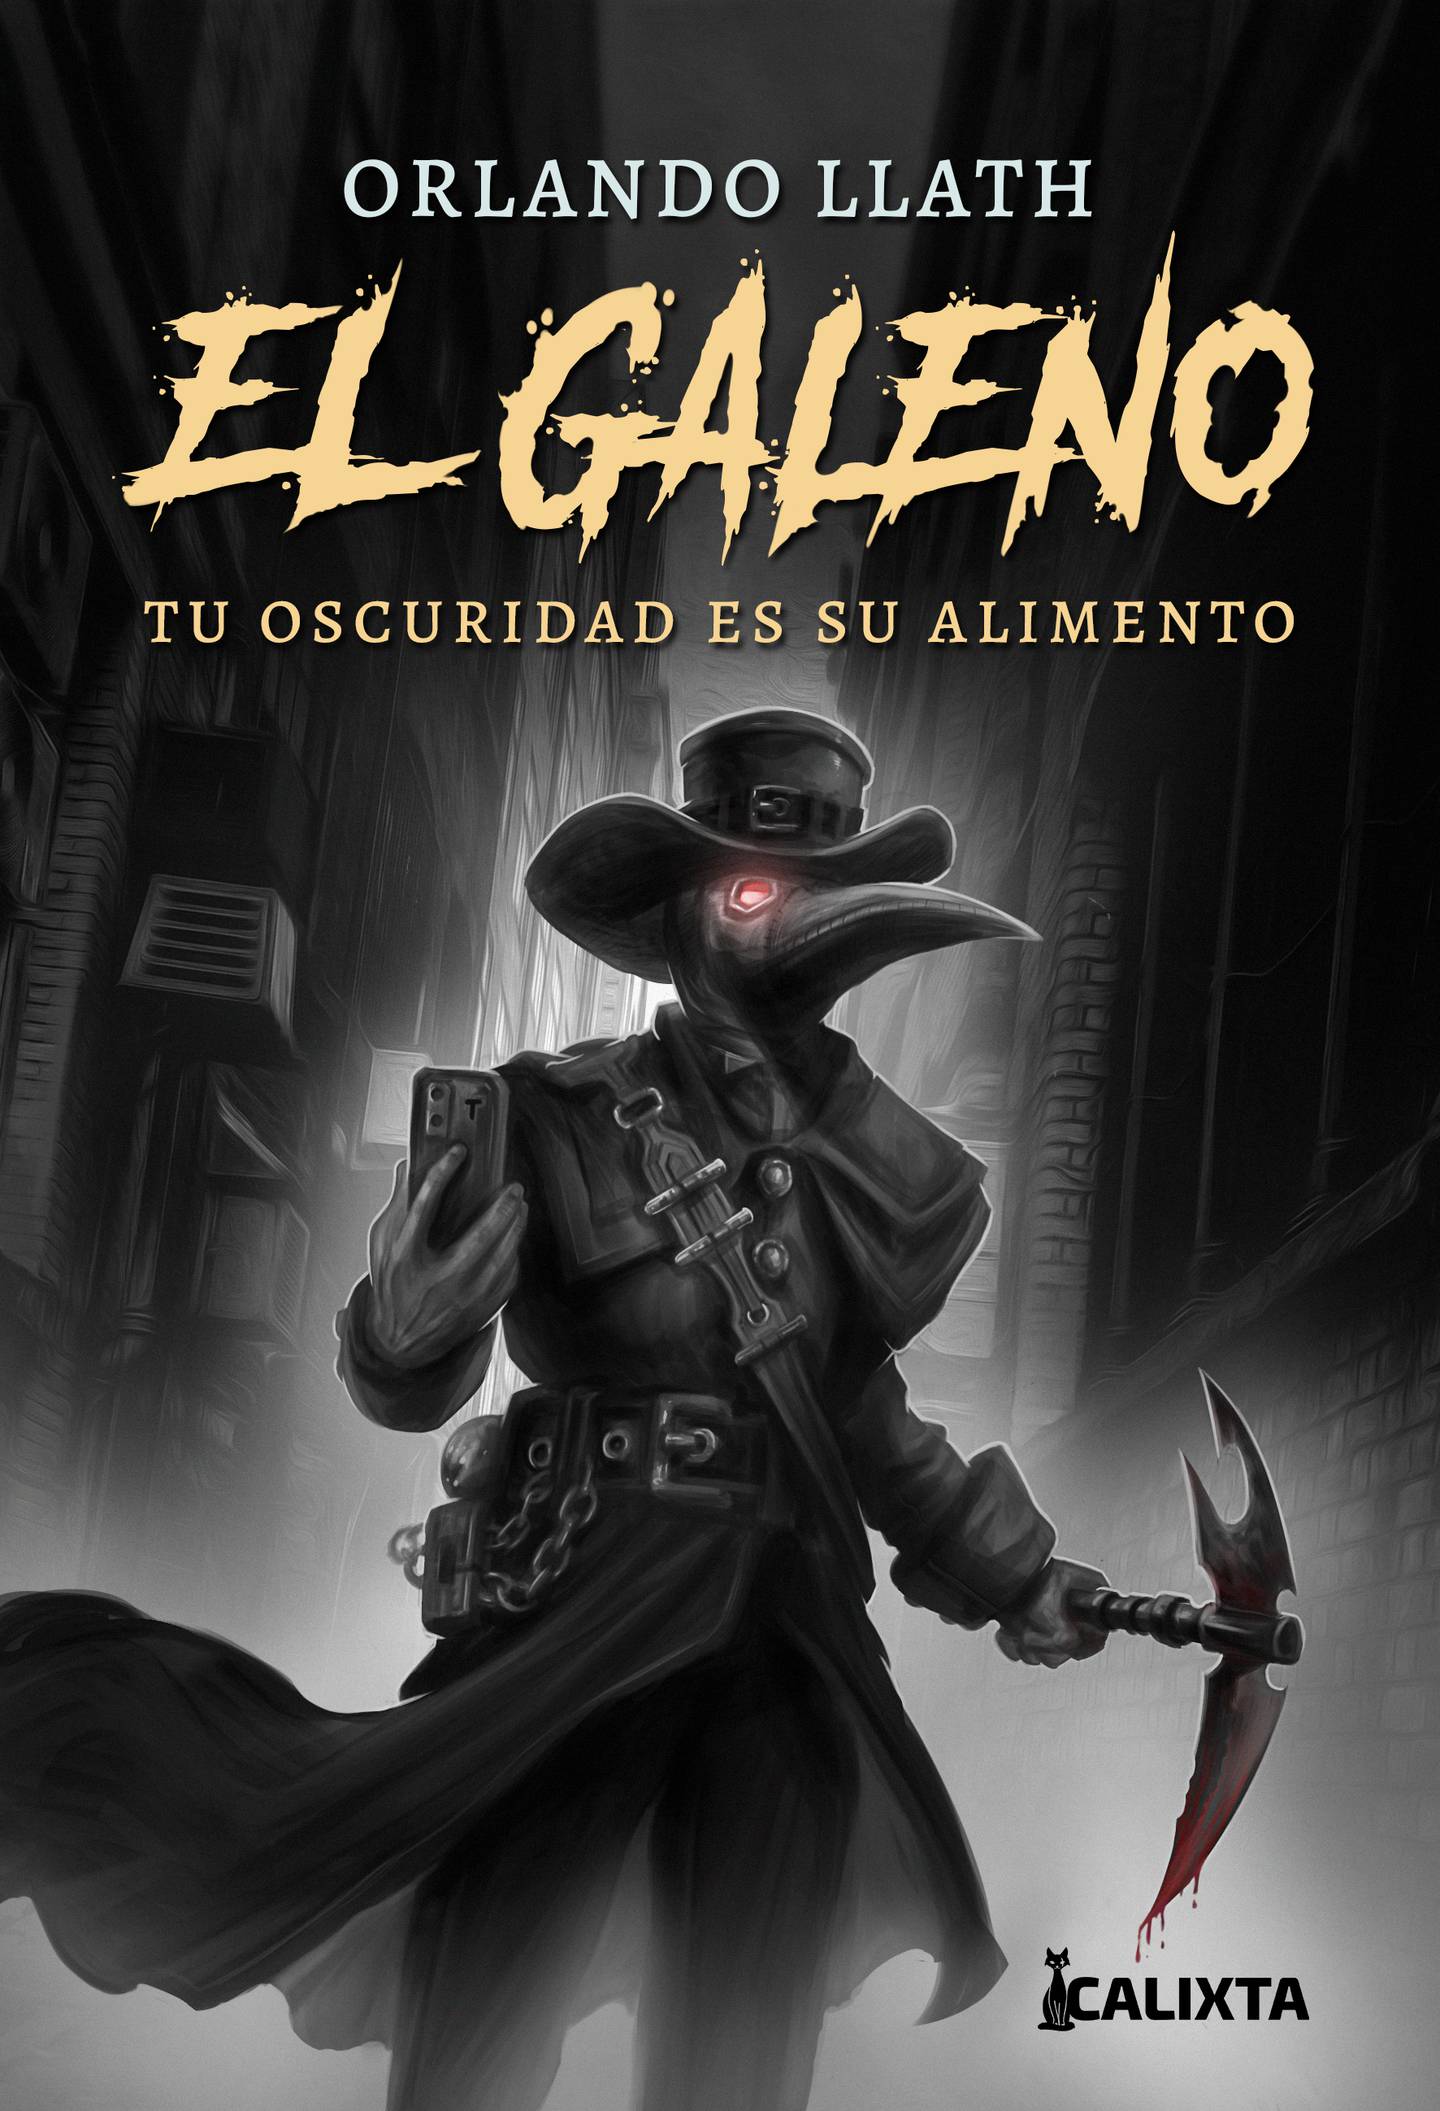 El Galeano